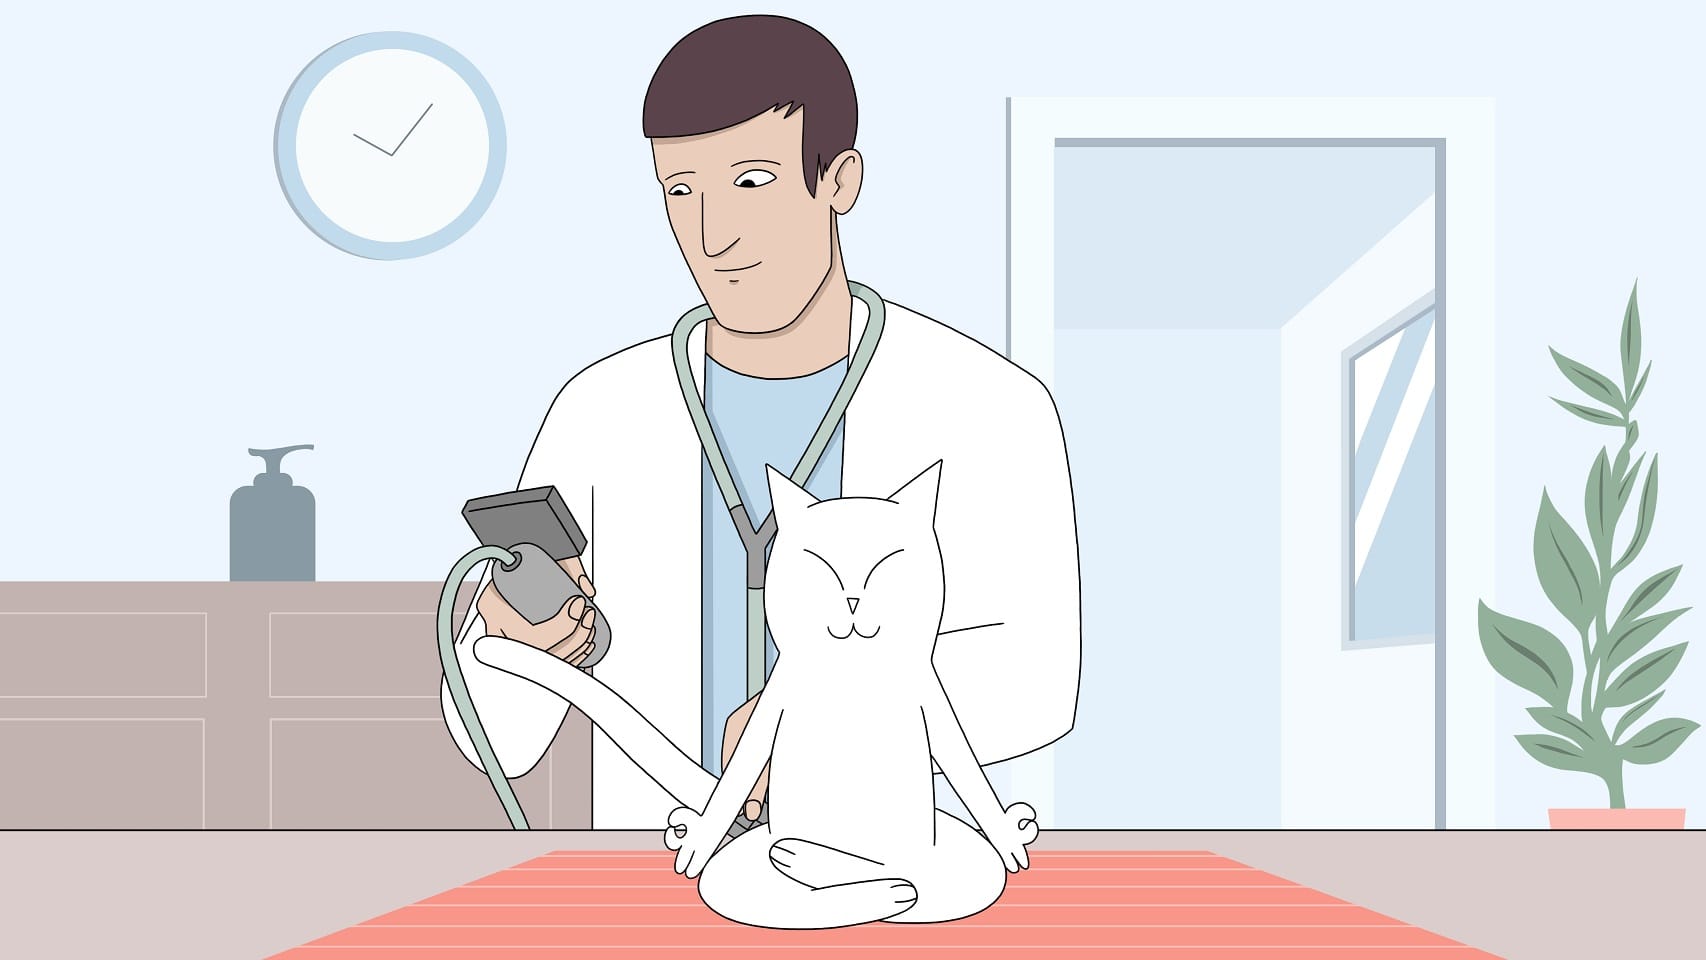 Katten är zen när veterinären mäter blodtrycket.